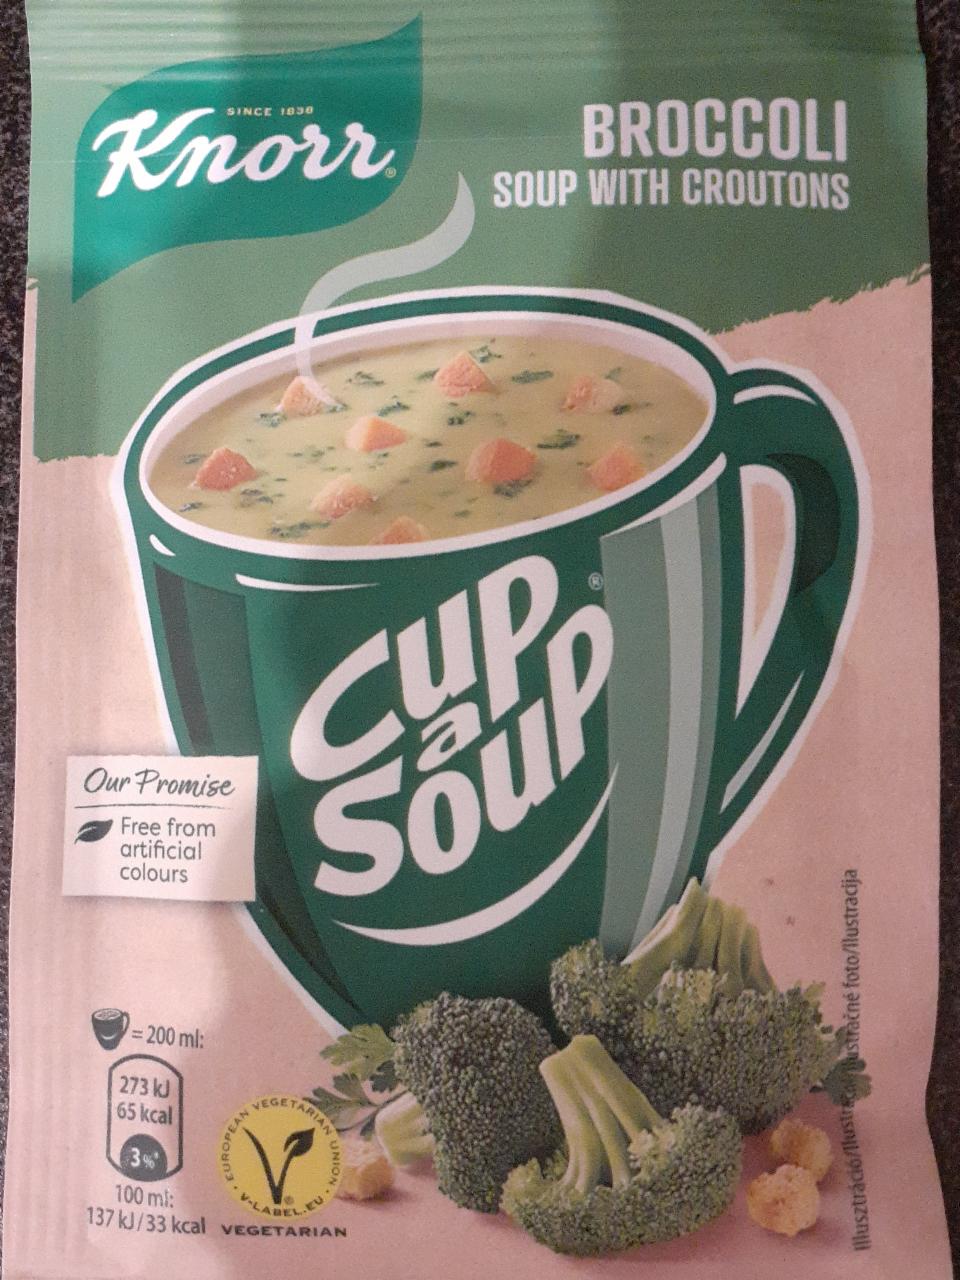 Fotografie - Cup a Soup Broccoli soup with croutons (brokolicová instantní polévka s krutony) Knorr